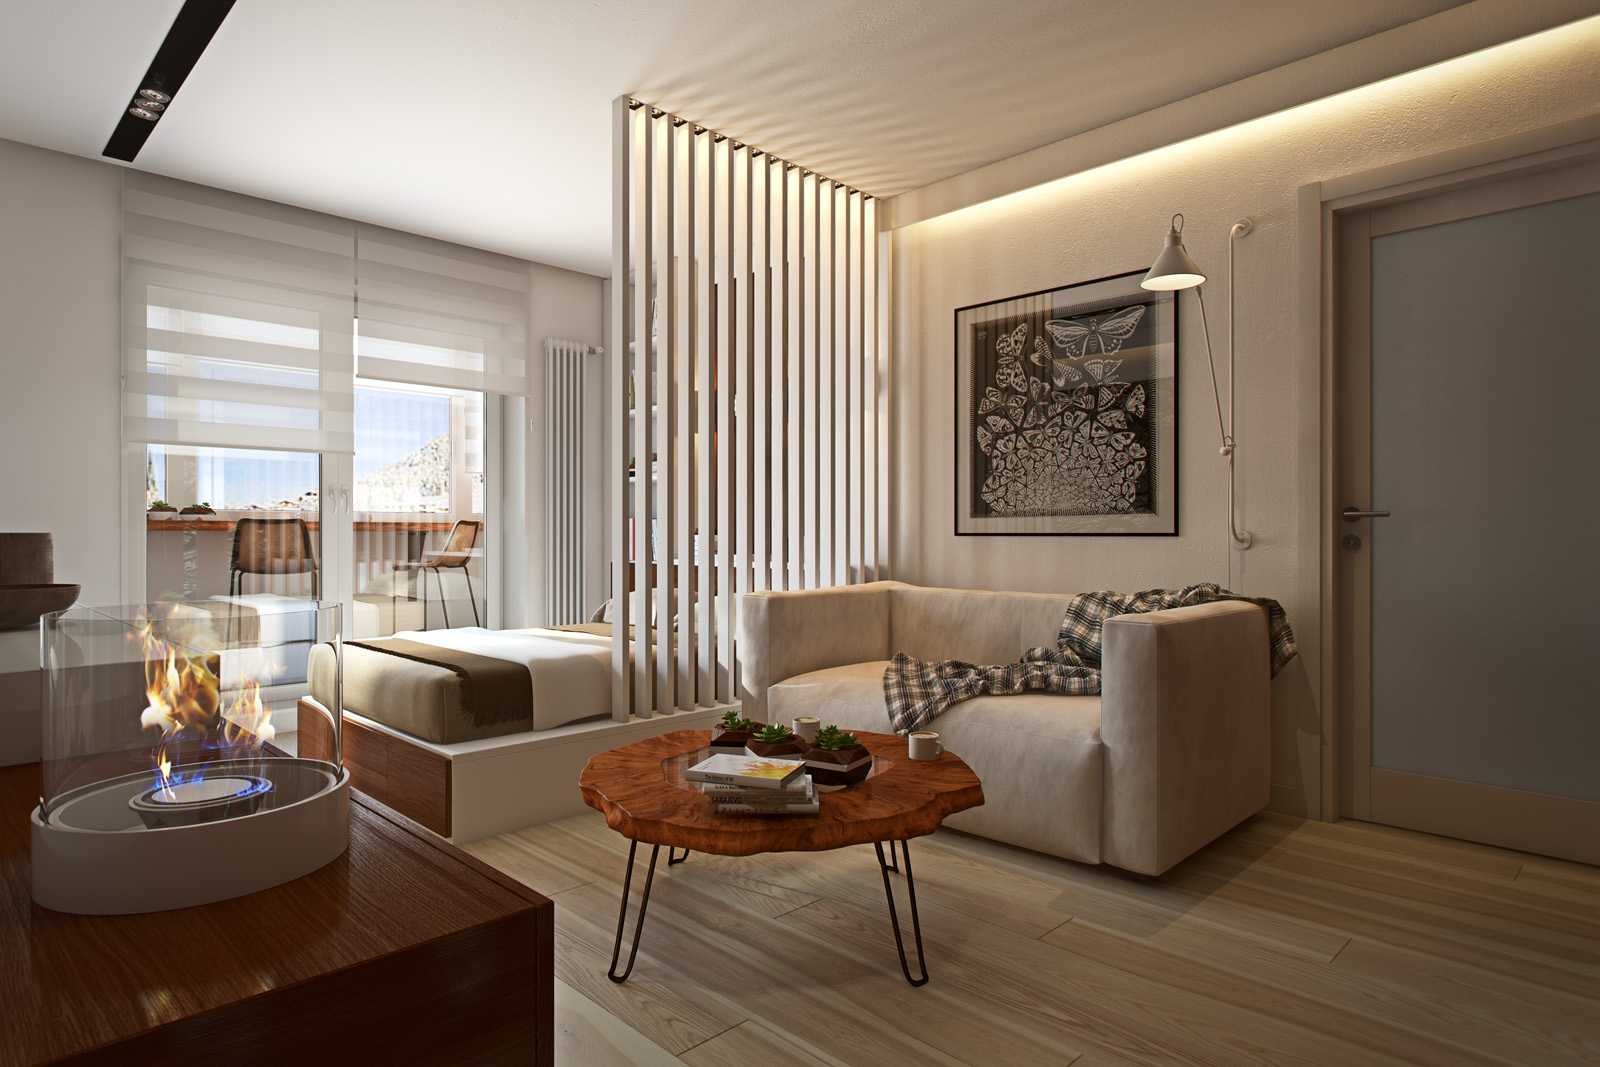 Дизайн квартиры 35 кв м  особенности оформления и способы расширения пространства Варианты оформления интерьера в разных комнатах и стилях Возможные цветовые решения для дизайна квартиры 35 кв м и советы дизайнеров по подбору мебели